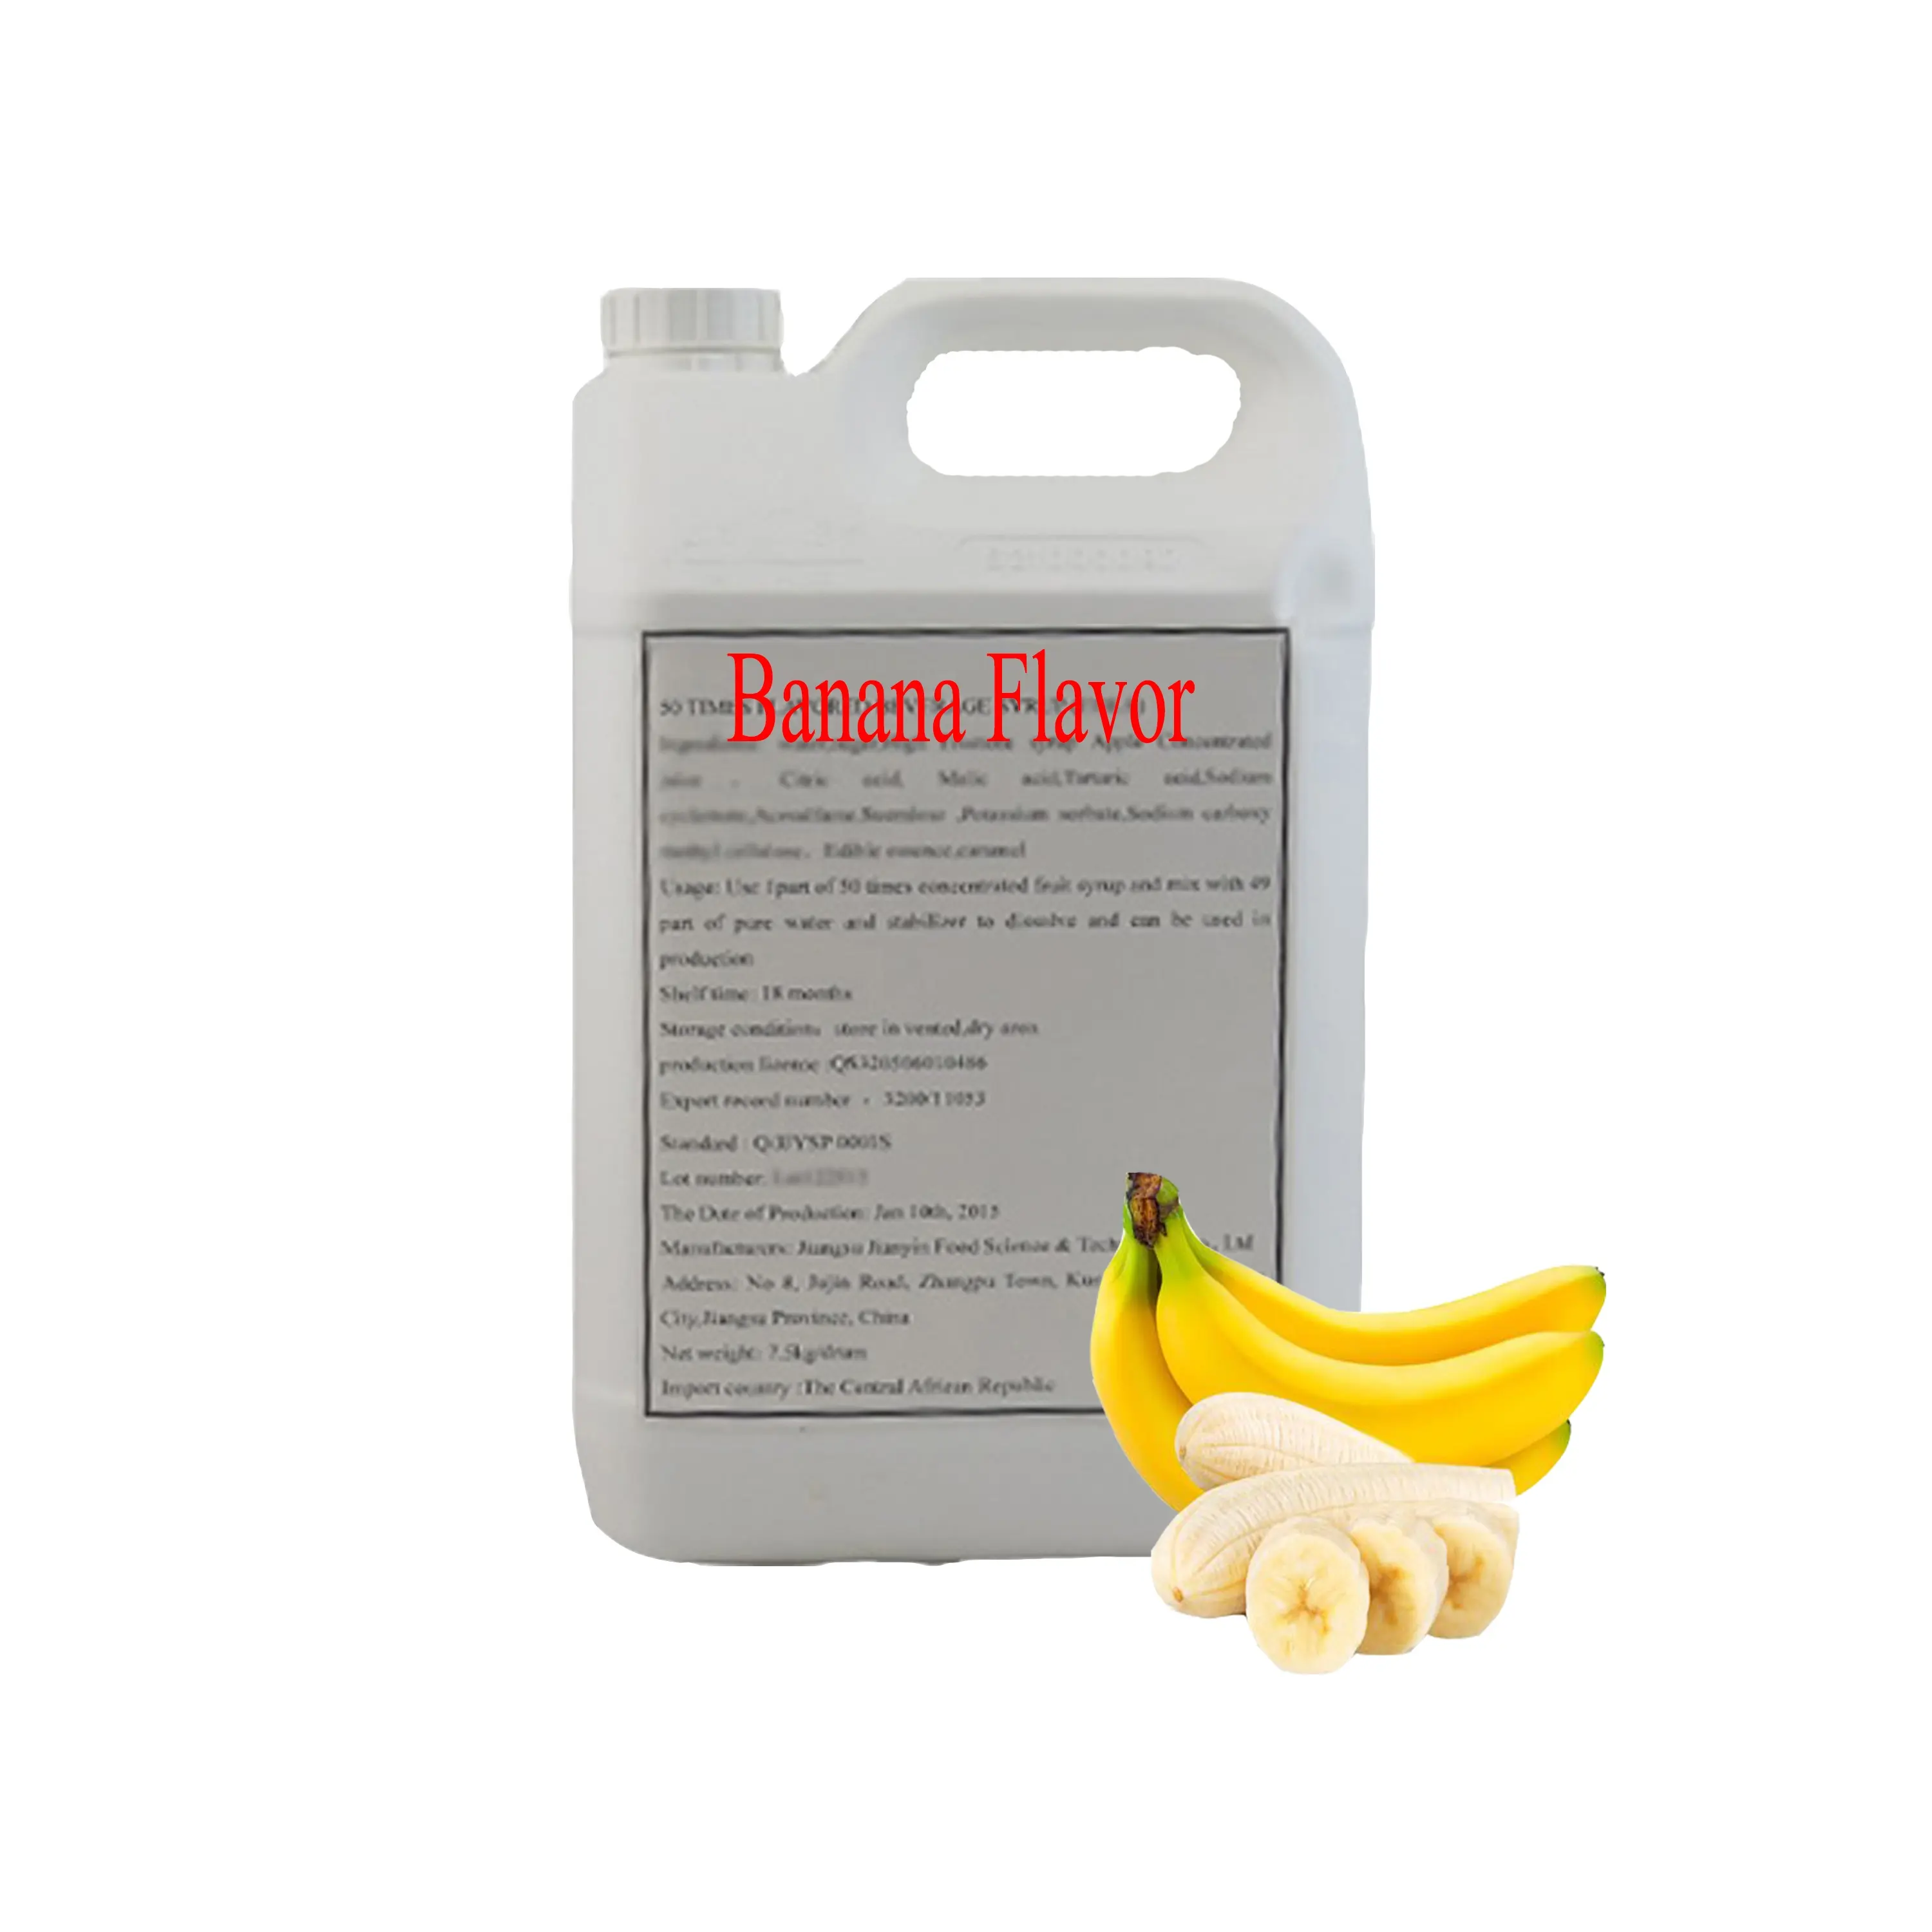 2023 новый продукт для продвижения концентрата сока в 50 раз больше концентрата сиропа-бананового вкуса